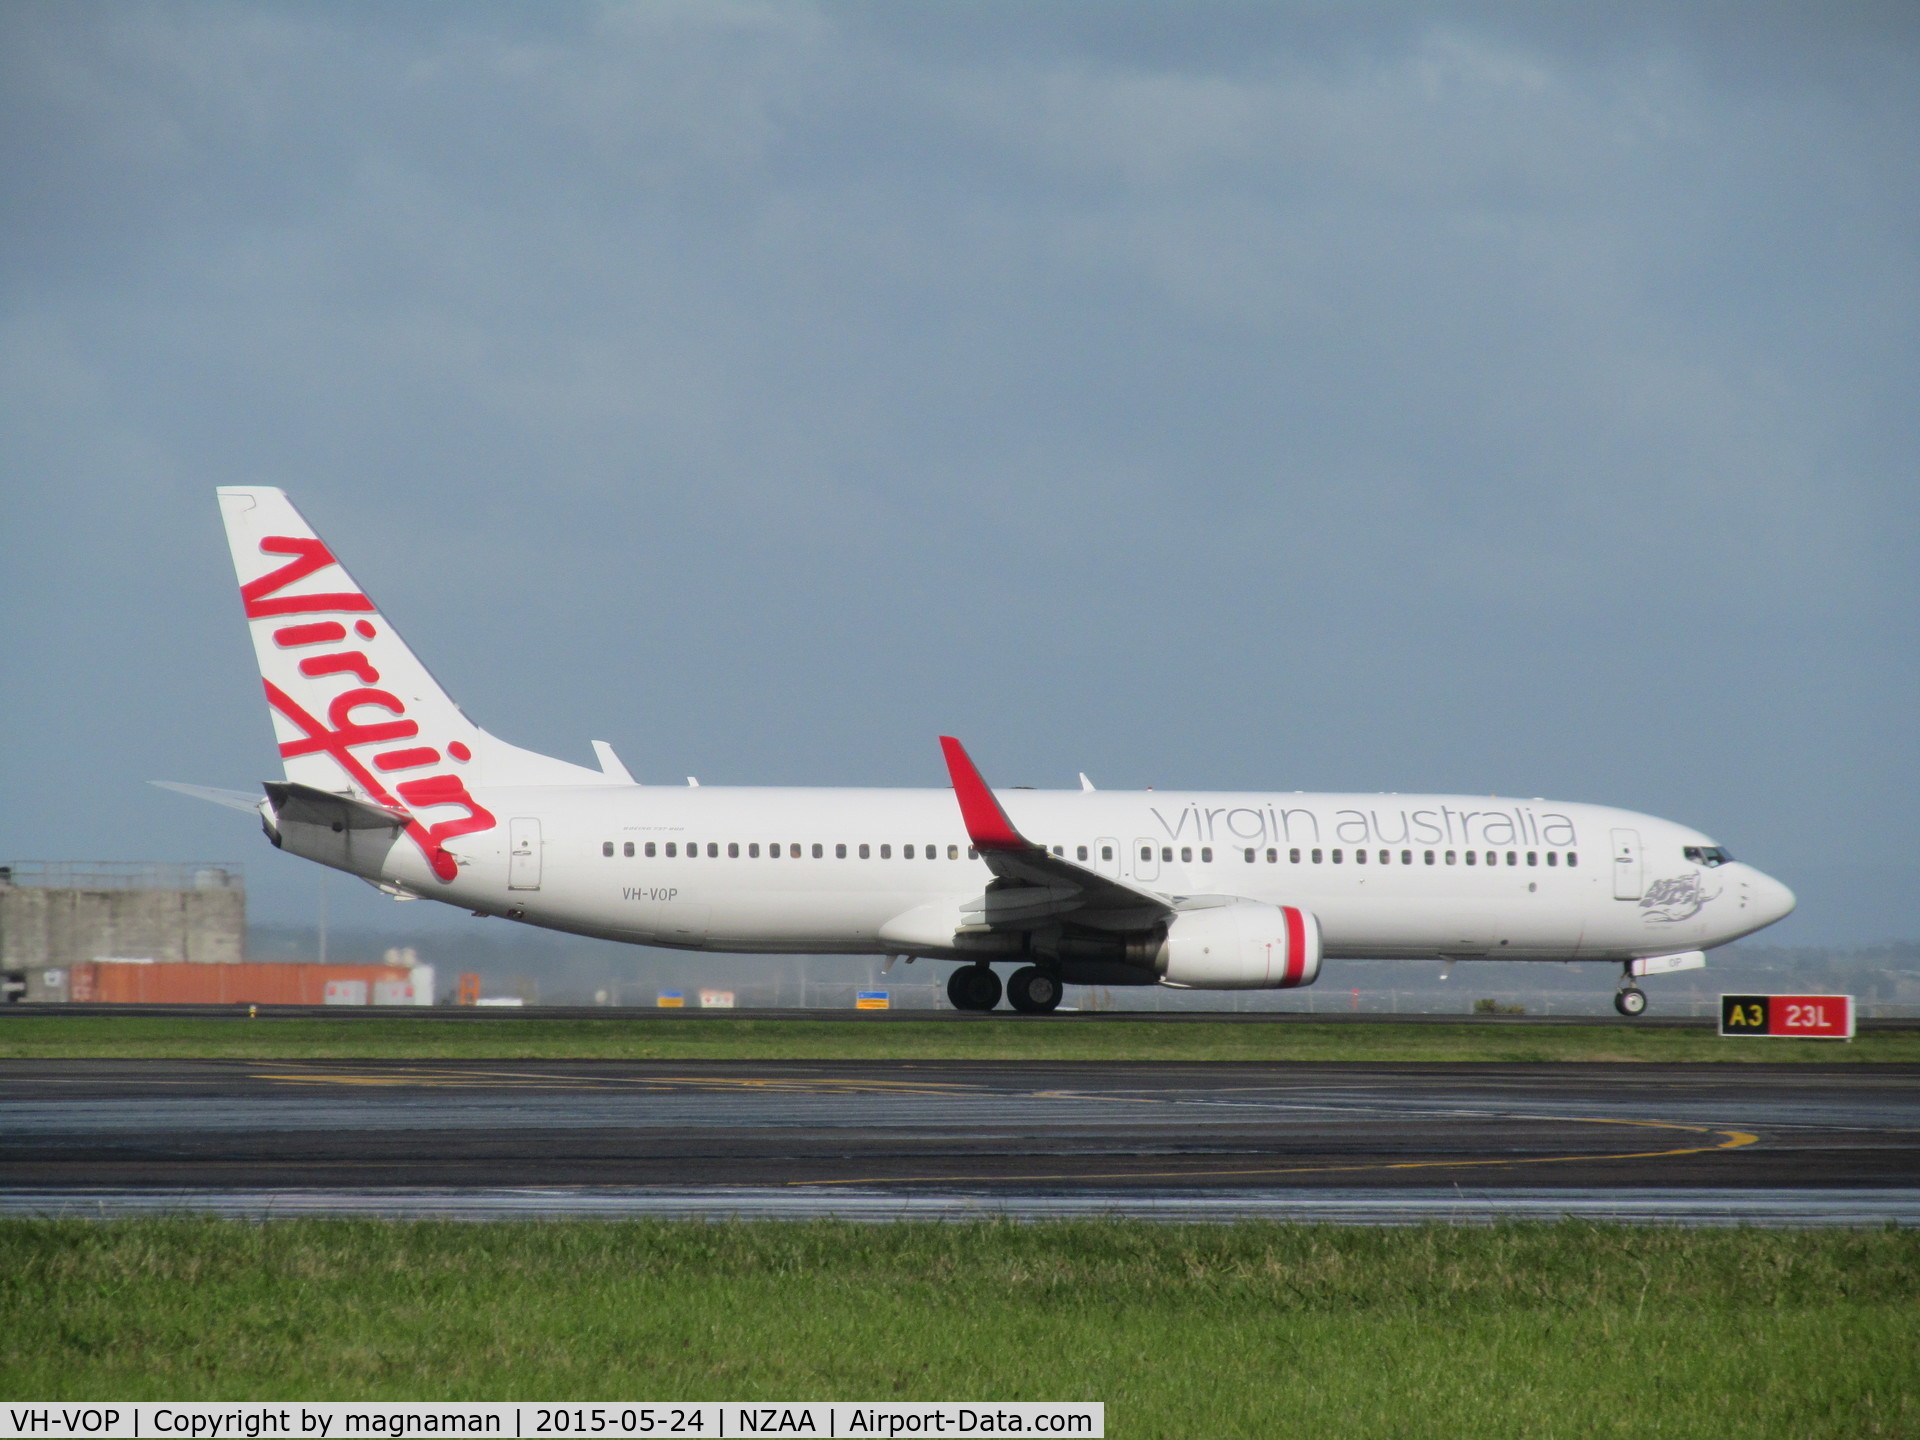 VH-VOP, 2003 Boeing 737-8FE C/N 33797, Leaving for another hop across tasman